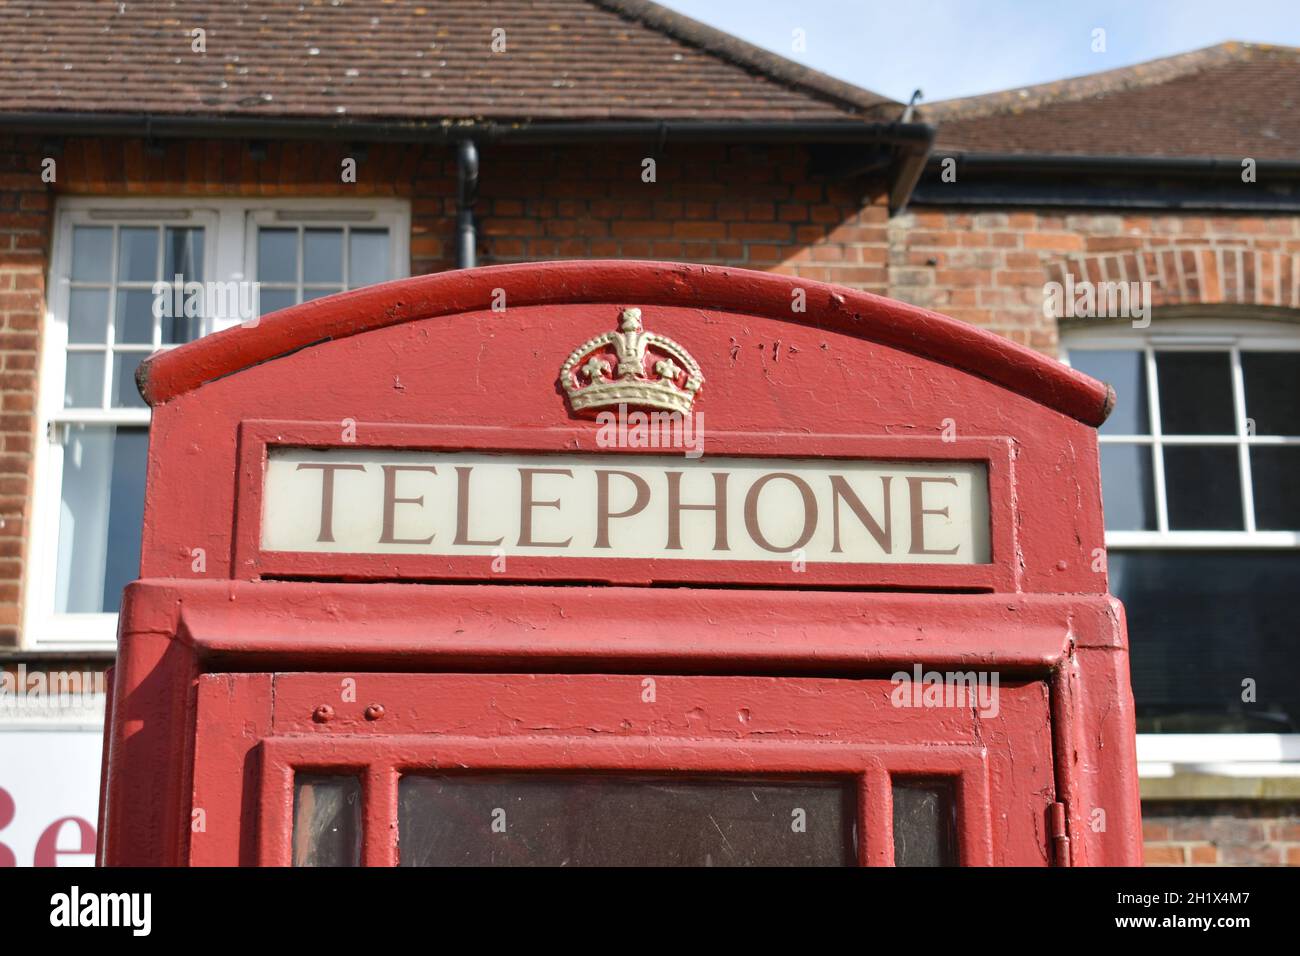 gros plan d'une boîte téléphonique rouge d'époque avec couronne royale d'or sur le dessus, à l'extérieur dans une rue devant un bâtiment en briques en été Banque D'Images